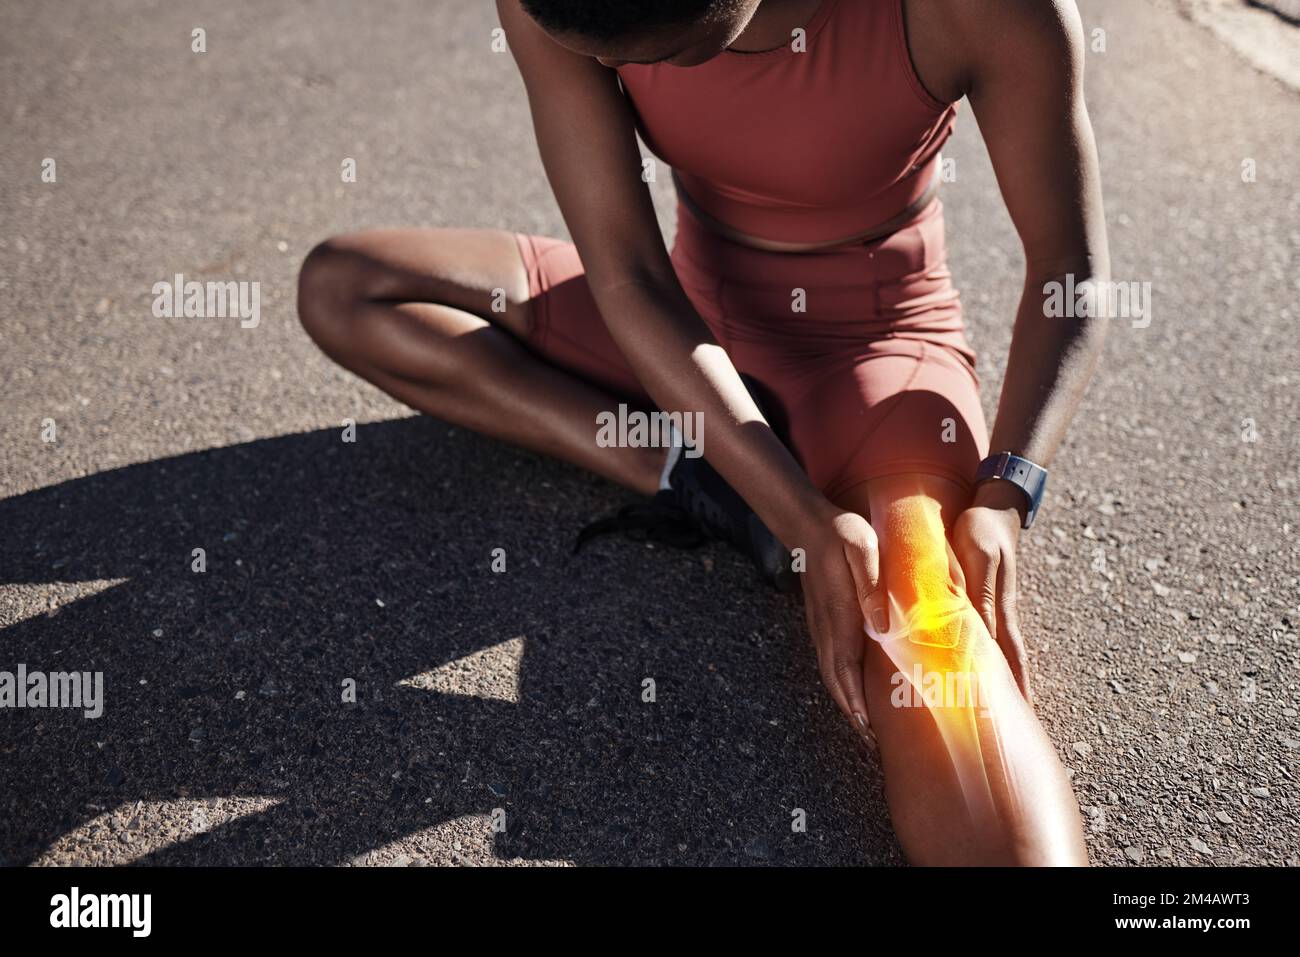 Raggi X, lesioni alle gambe e allenamento di donne nere con dolore medico, sforzo corporeo e emergenza durante una maratona sportiva. Doloroso, rotto muscolo e africano Foto Stock